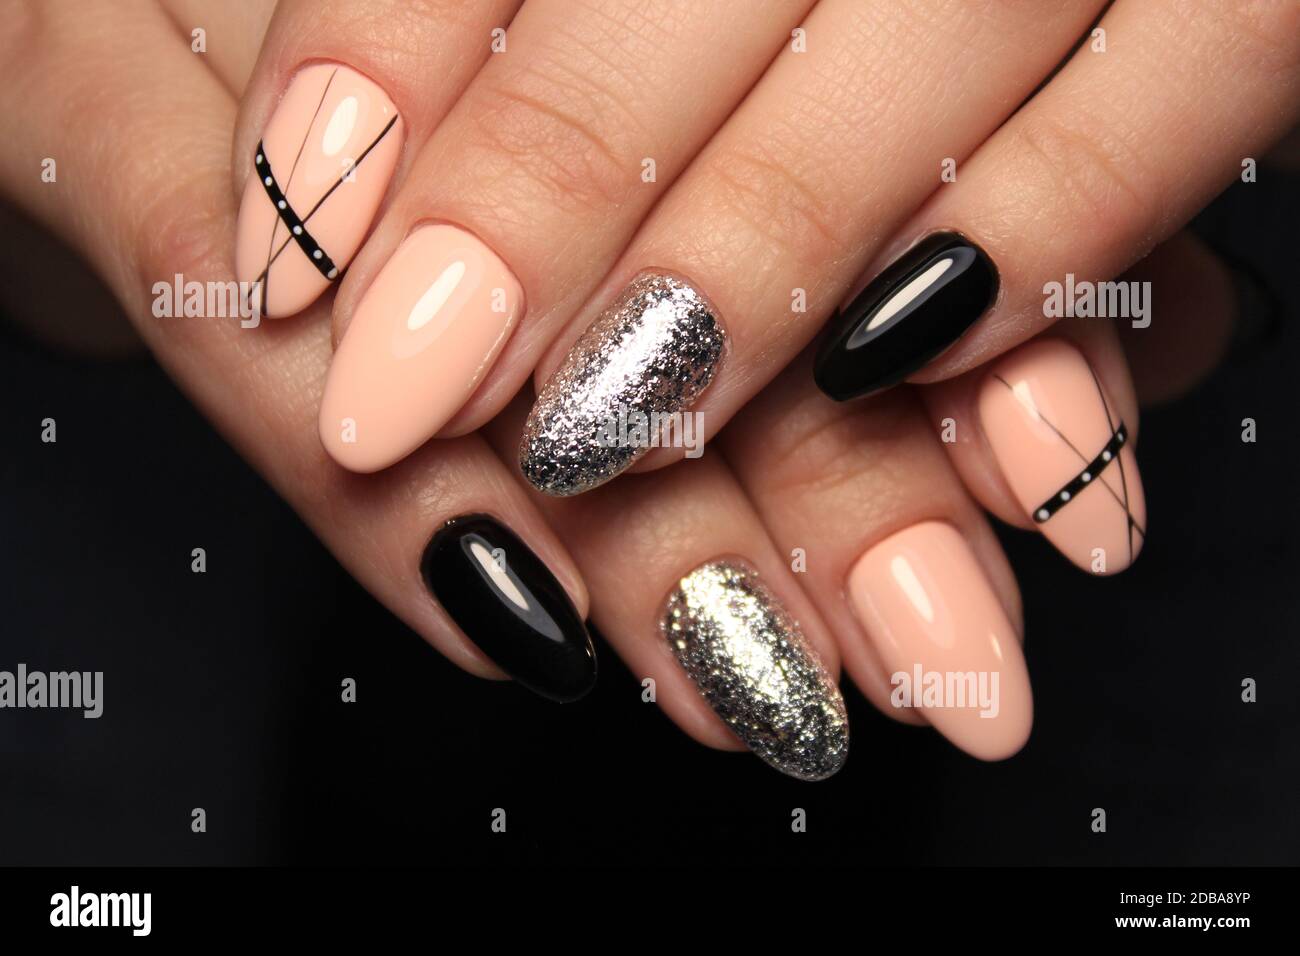 Beautiful hands need beautiful nails #nailart blacknail #nailsbrazilian  #nailtech #naildesigns #nails2inspire #nailartist #nails4today… | Instagram